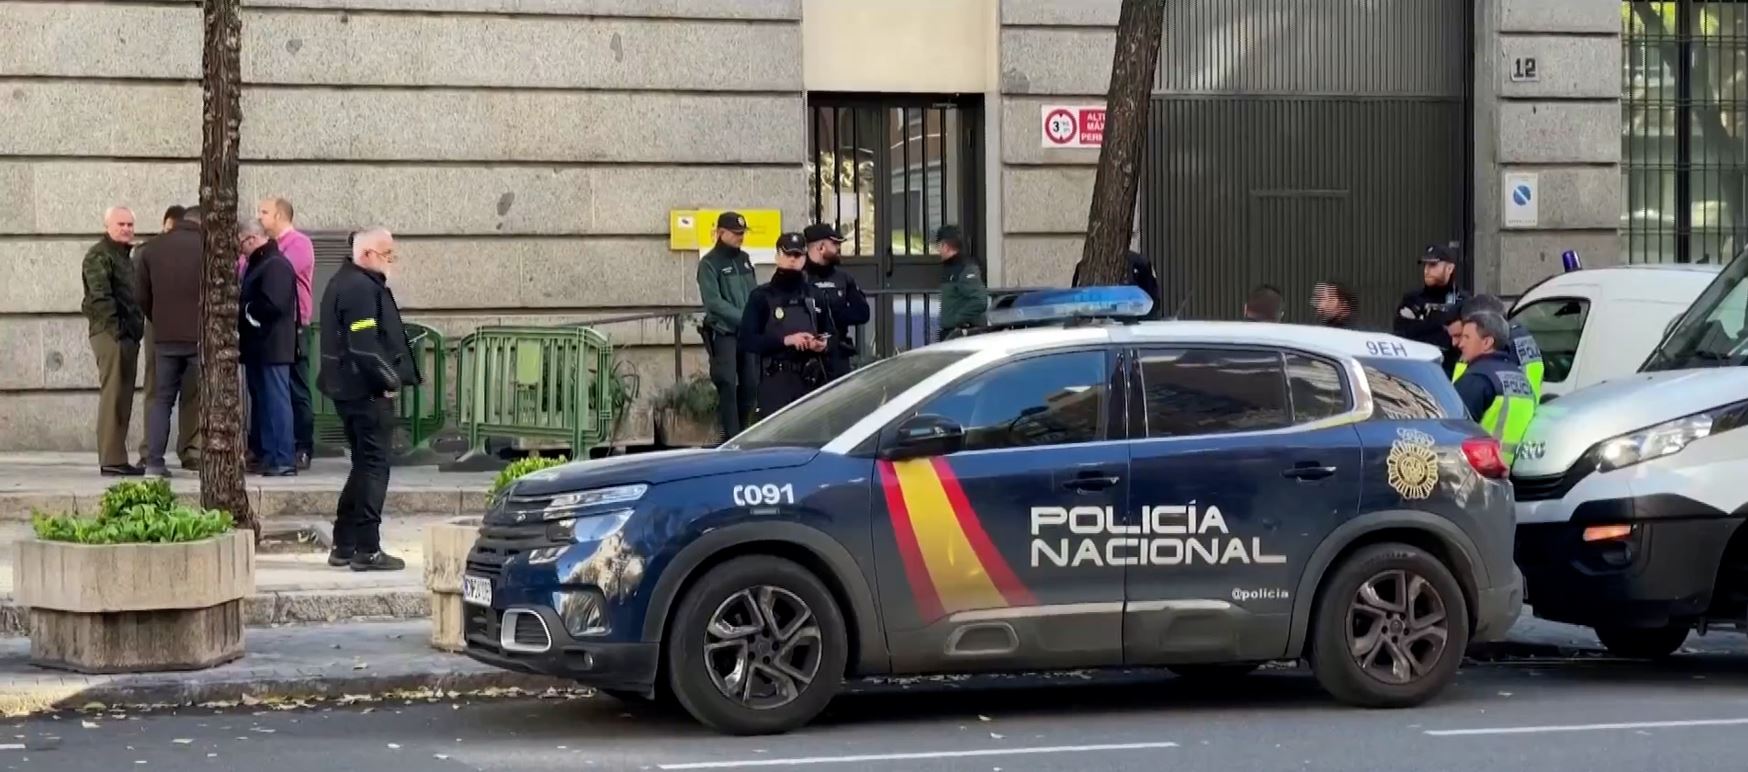 Ύποπτη επιστολή – βόμβα και στην πρεσβεία των ΗΠΑ στη Μαδρίτη